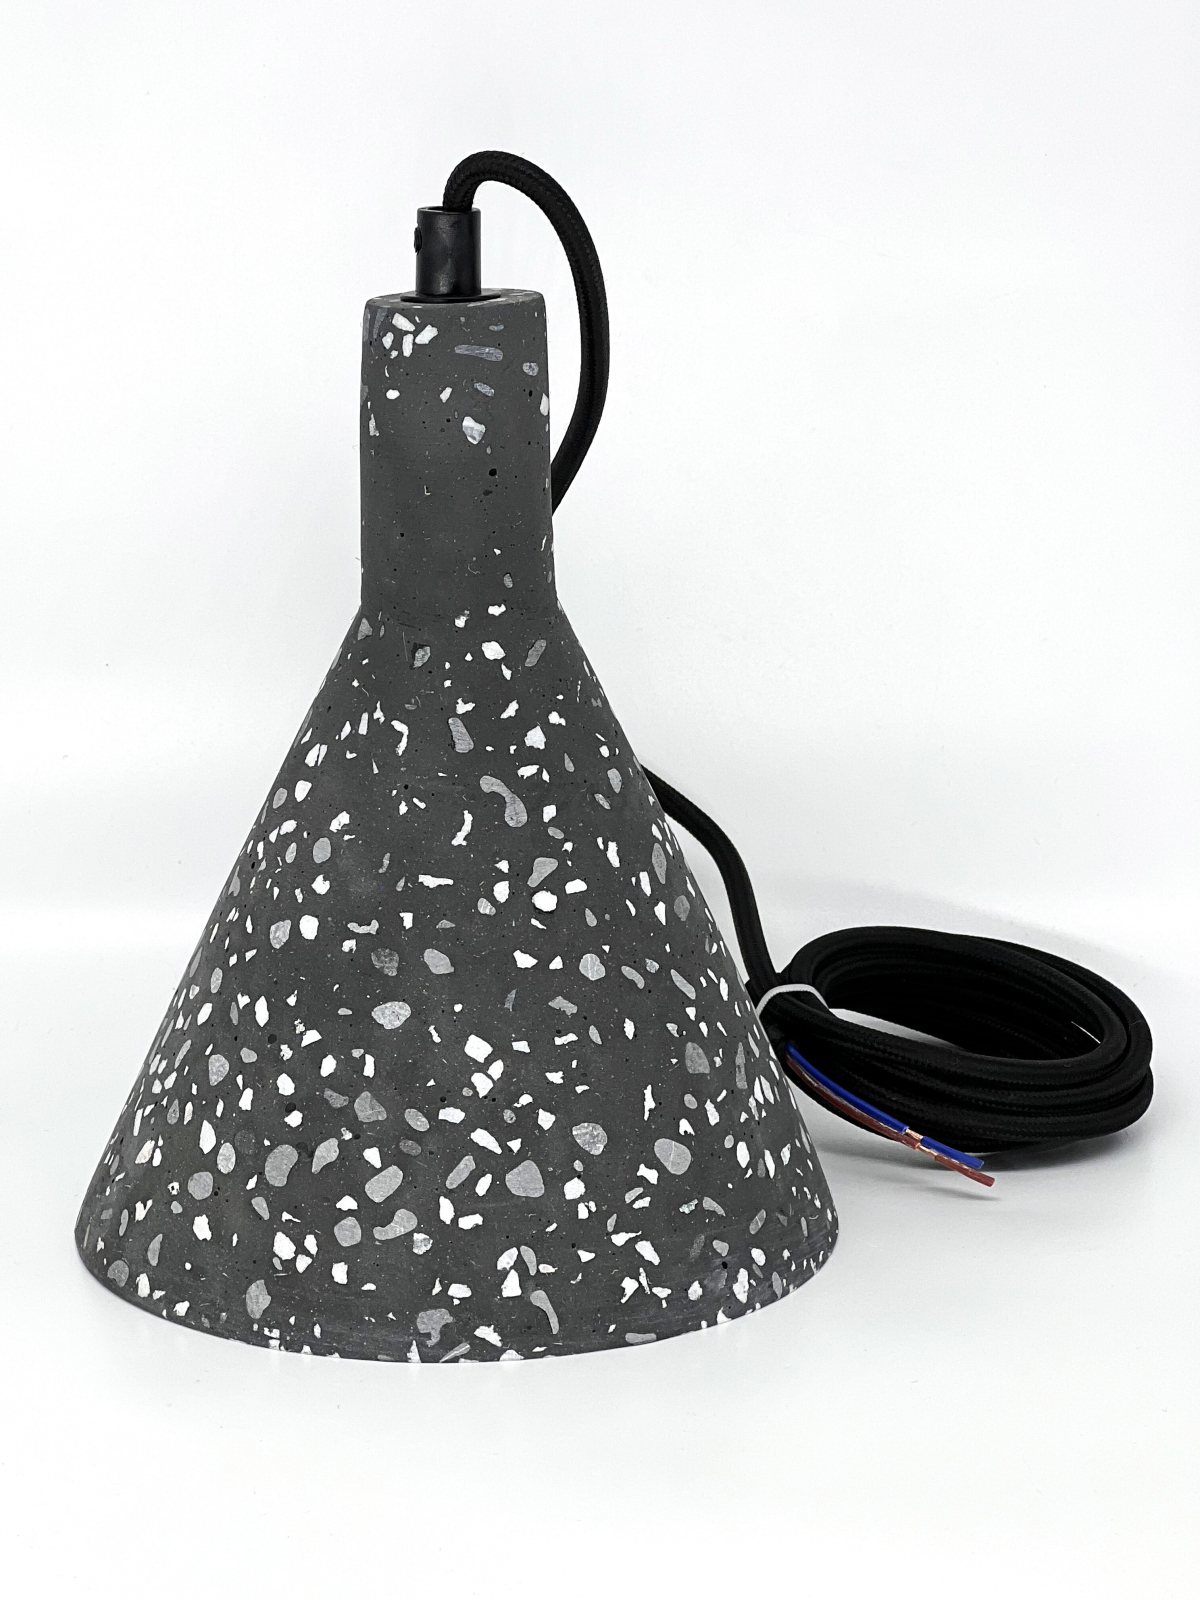 Подвесной светильник конусный под лампу E27 иск.камень, цвет черн гранит, IP20 (21403) - Фото 2